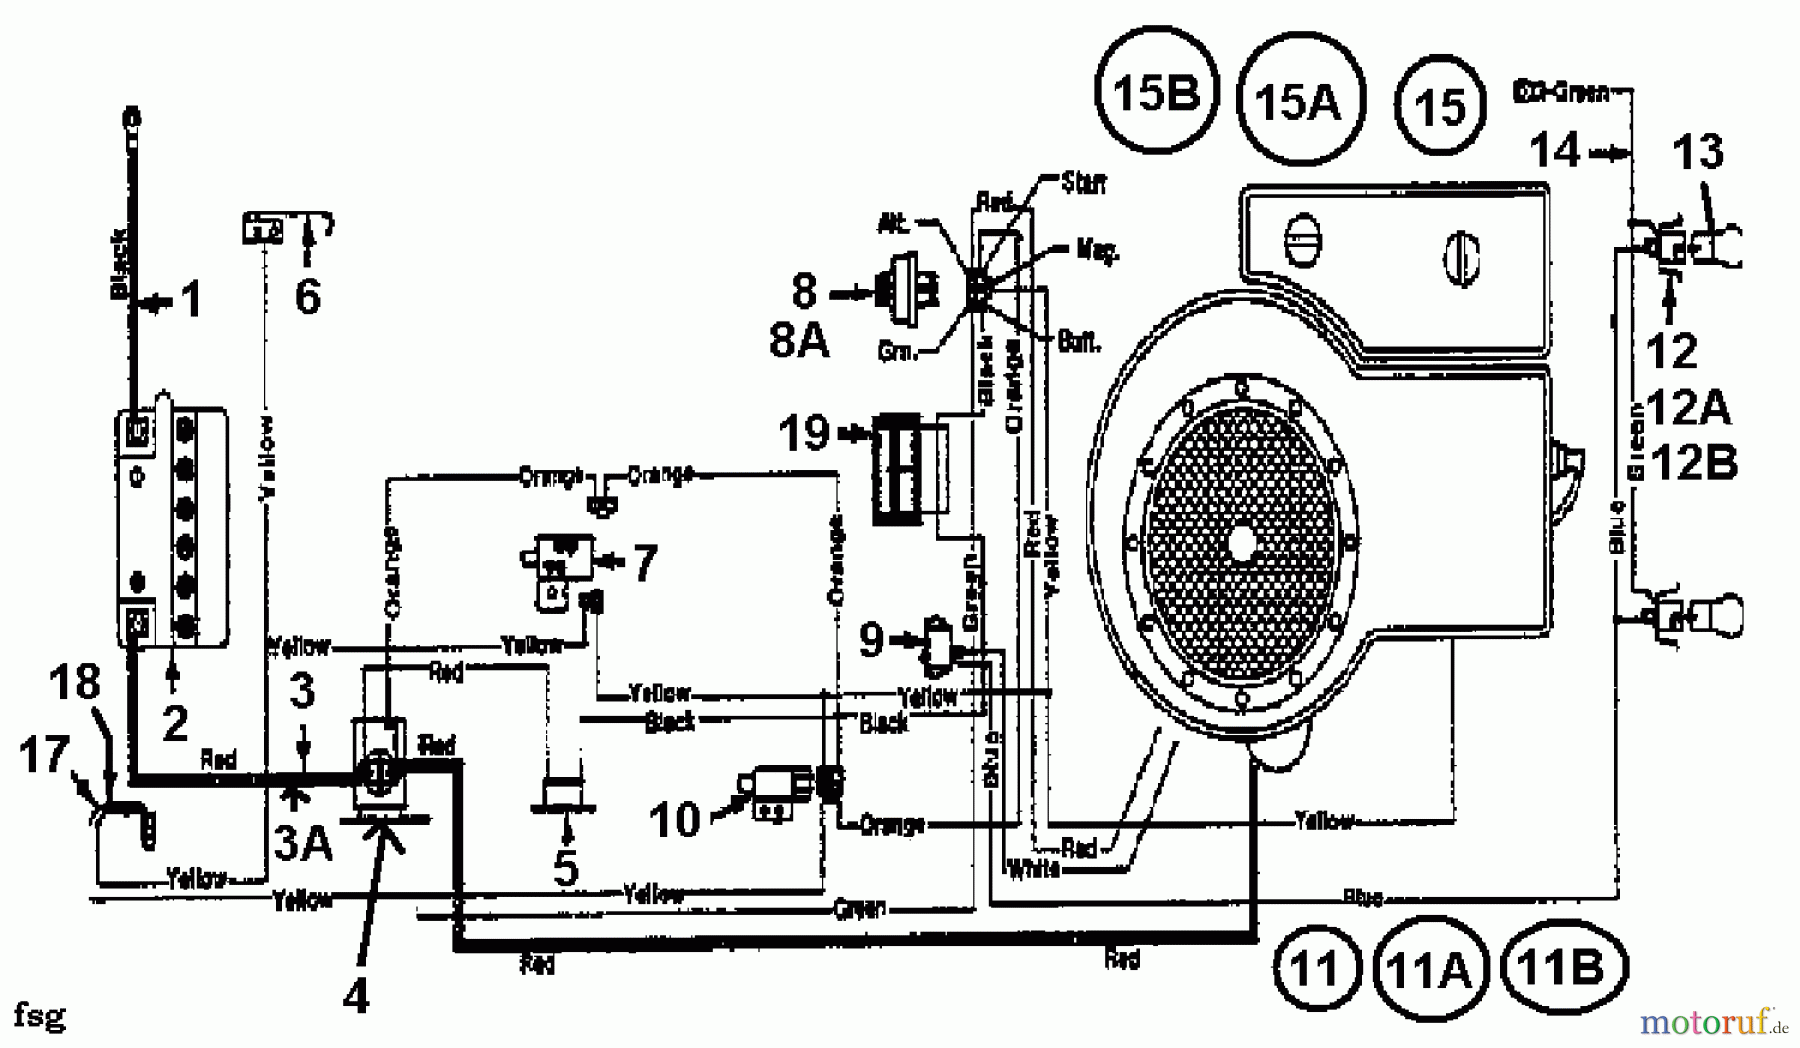  Florica Tracteurs de pelouse 12/91 132-450E638  (1992) Plan électrique cylindre simple